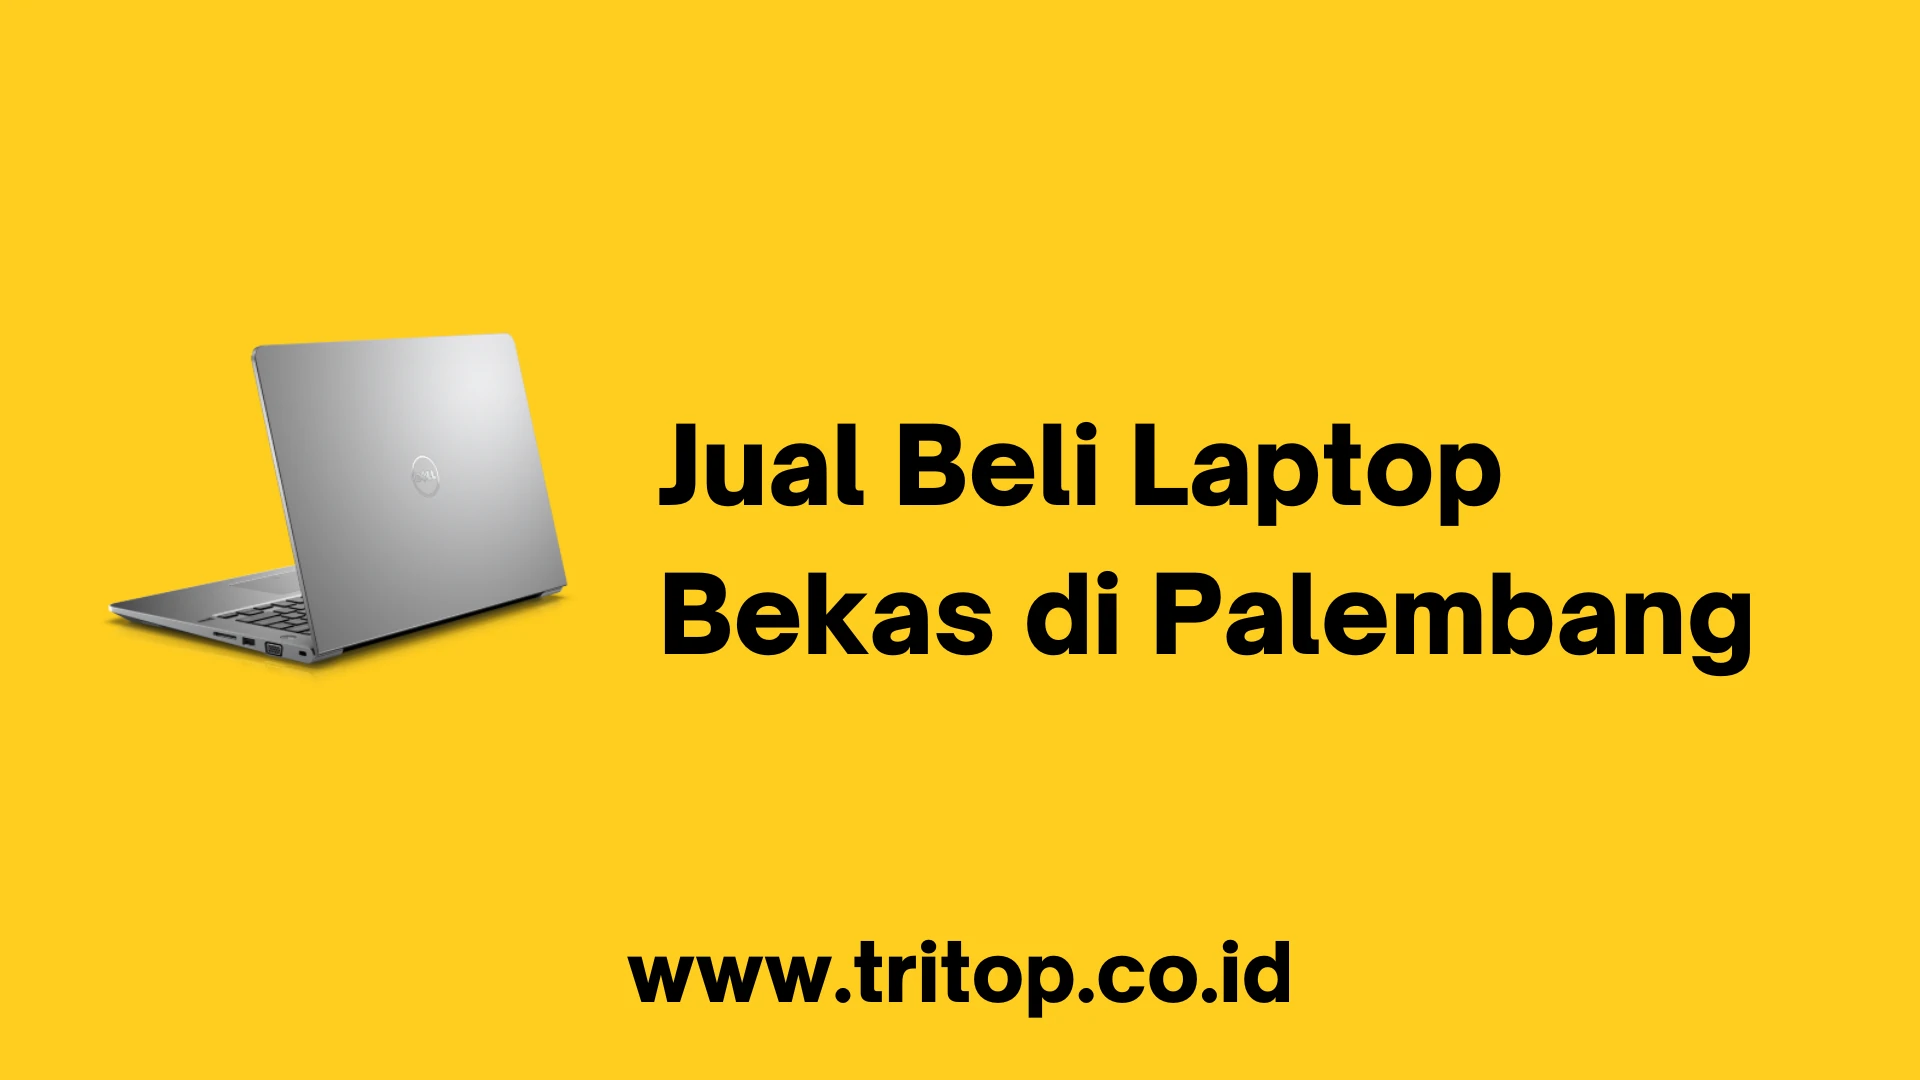 Jual Beli Laptop Bekas di Palembang